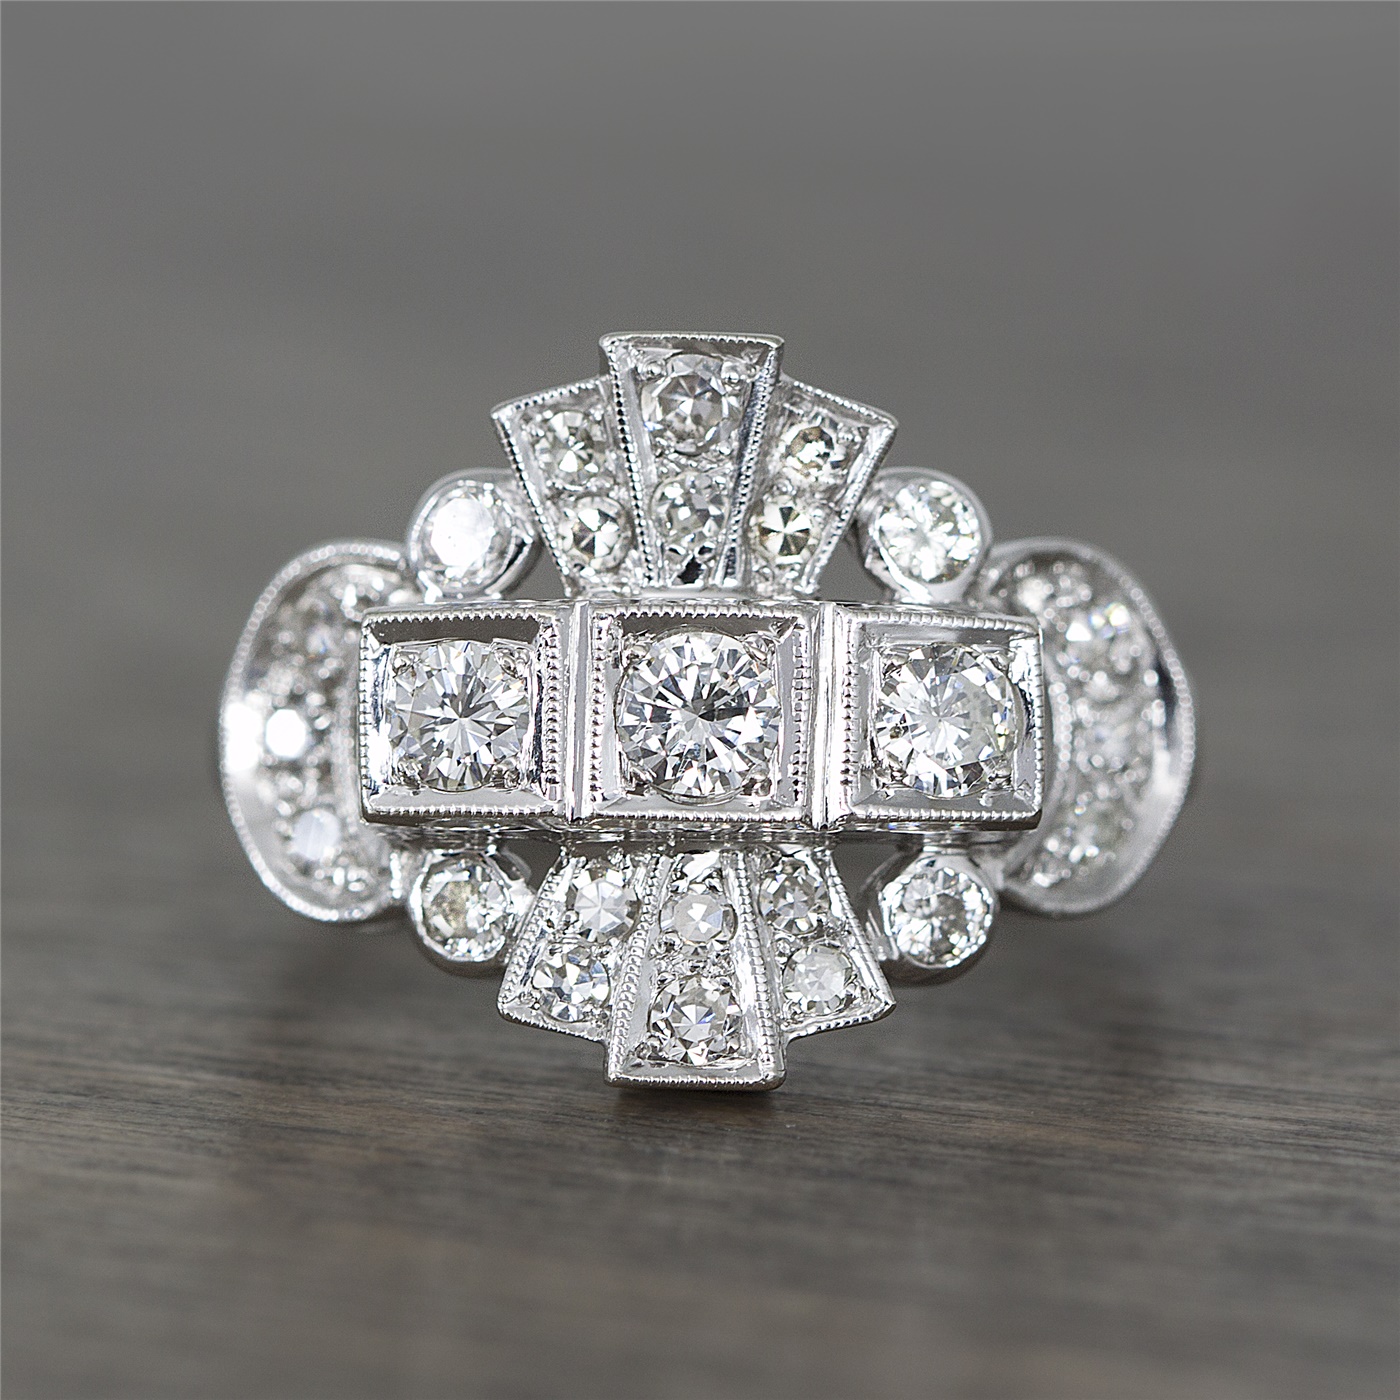 Vintage Art Deco 14k White Gold & Diamond Fashion Ring